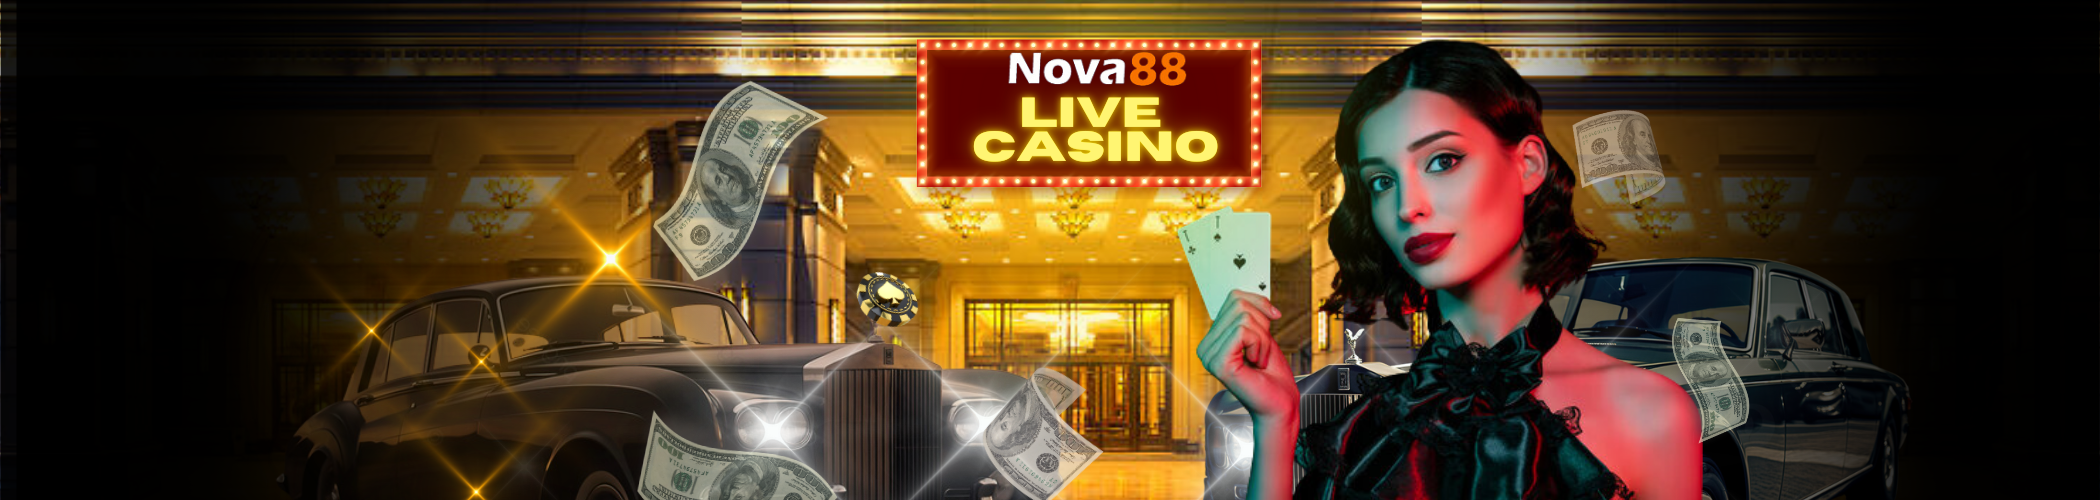 Nova88 Online Live Casino Banner Nova88 Live Casino Nova88 Best Nova88 Online Casino Nova88 Casino